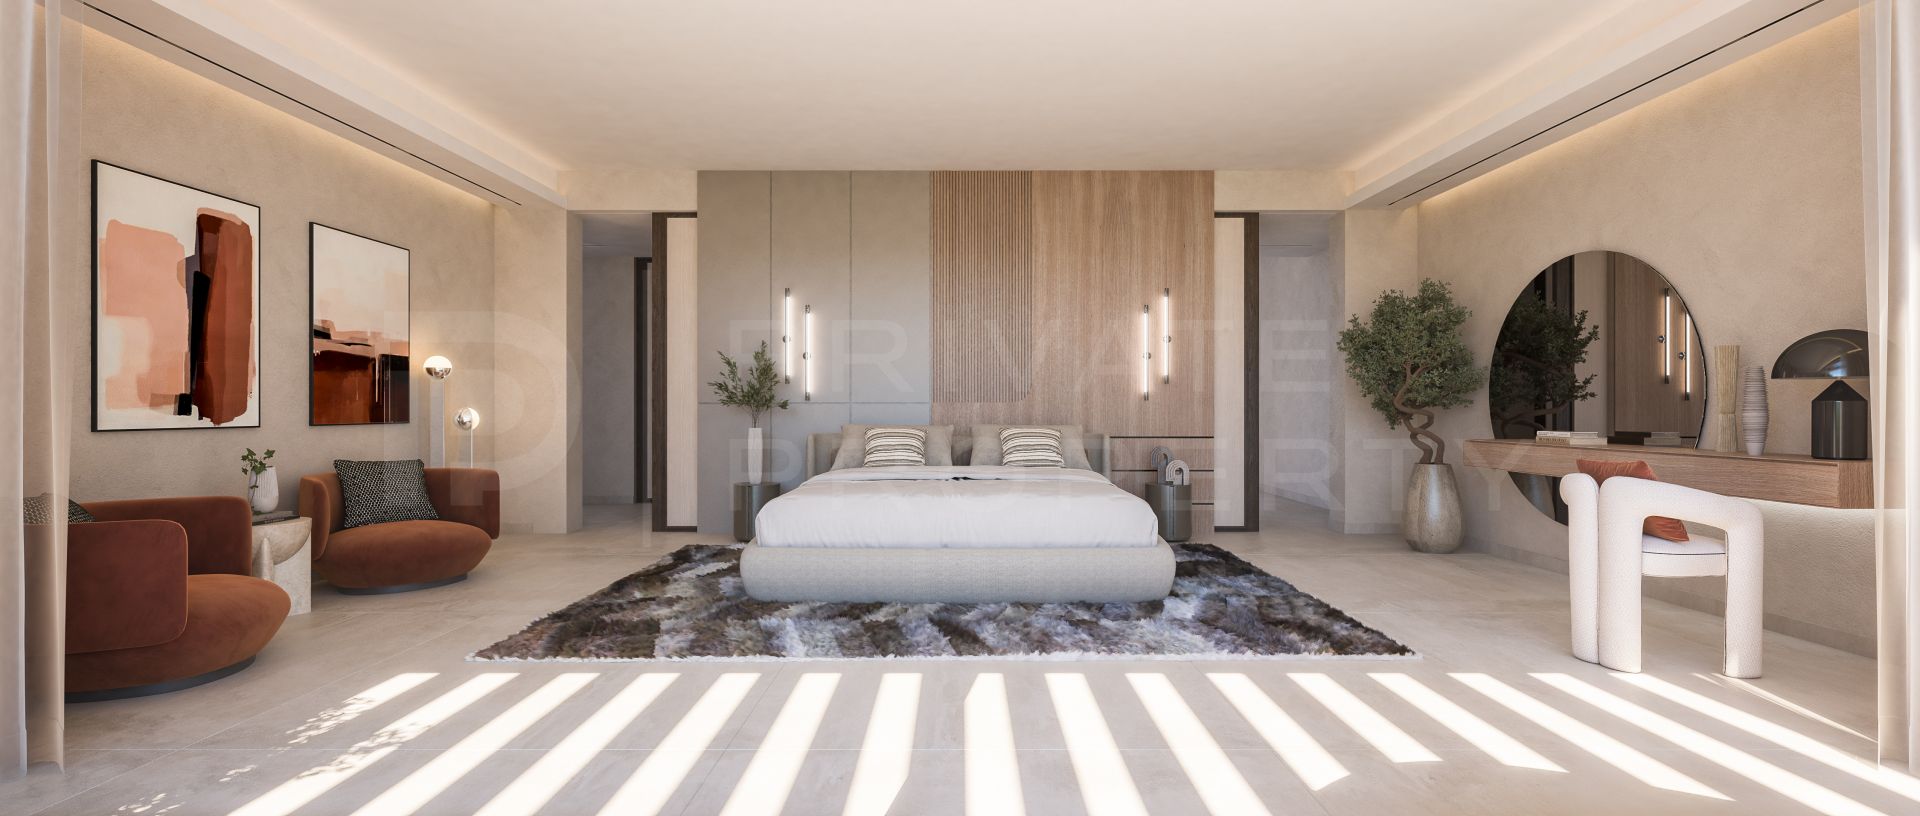 Extraordinary brand new villa in El Paraiso